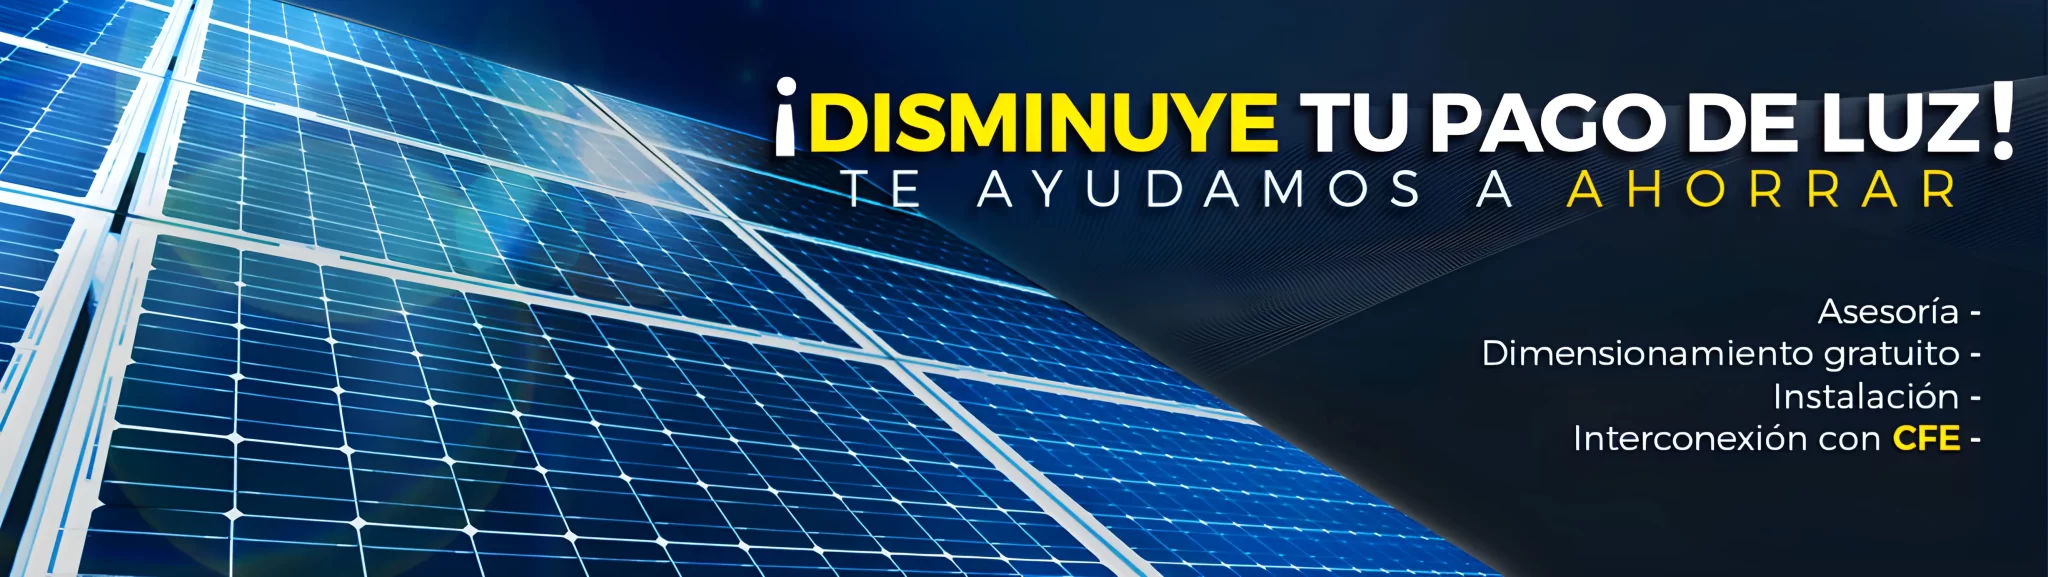 banner-fotovoltaicos-2048x577